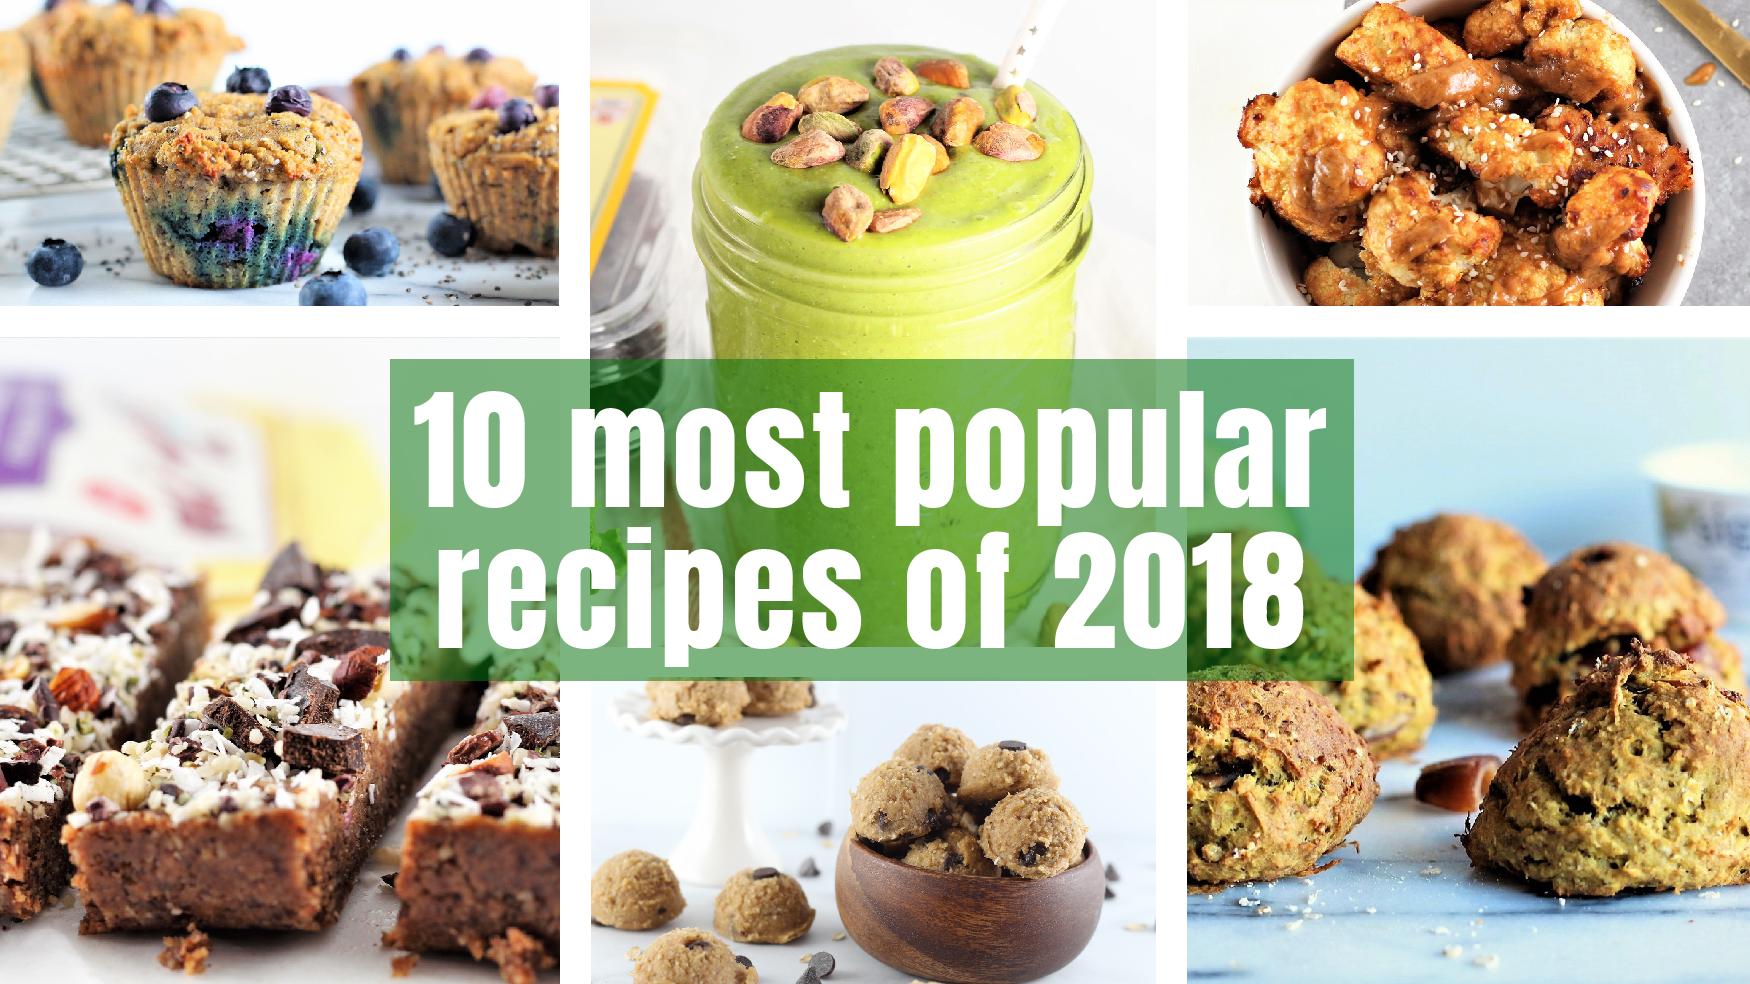  10 most popular recipes of 2018 